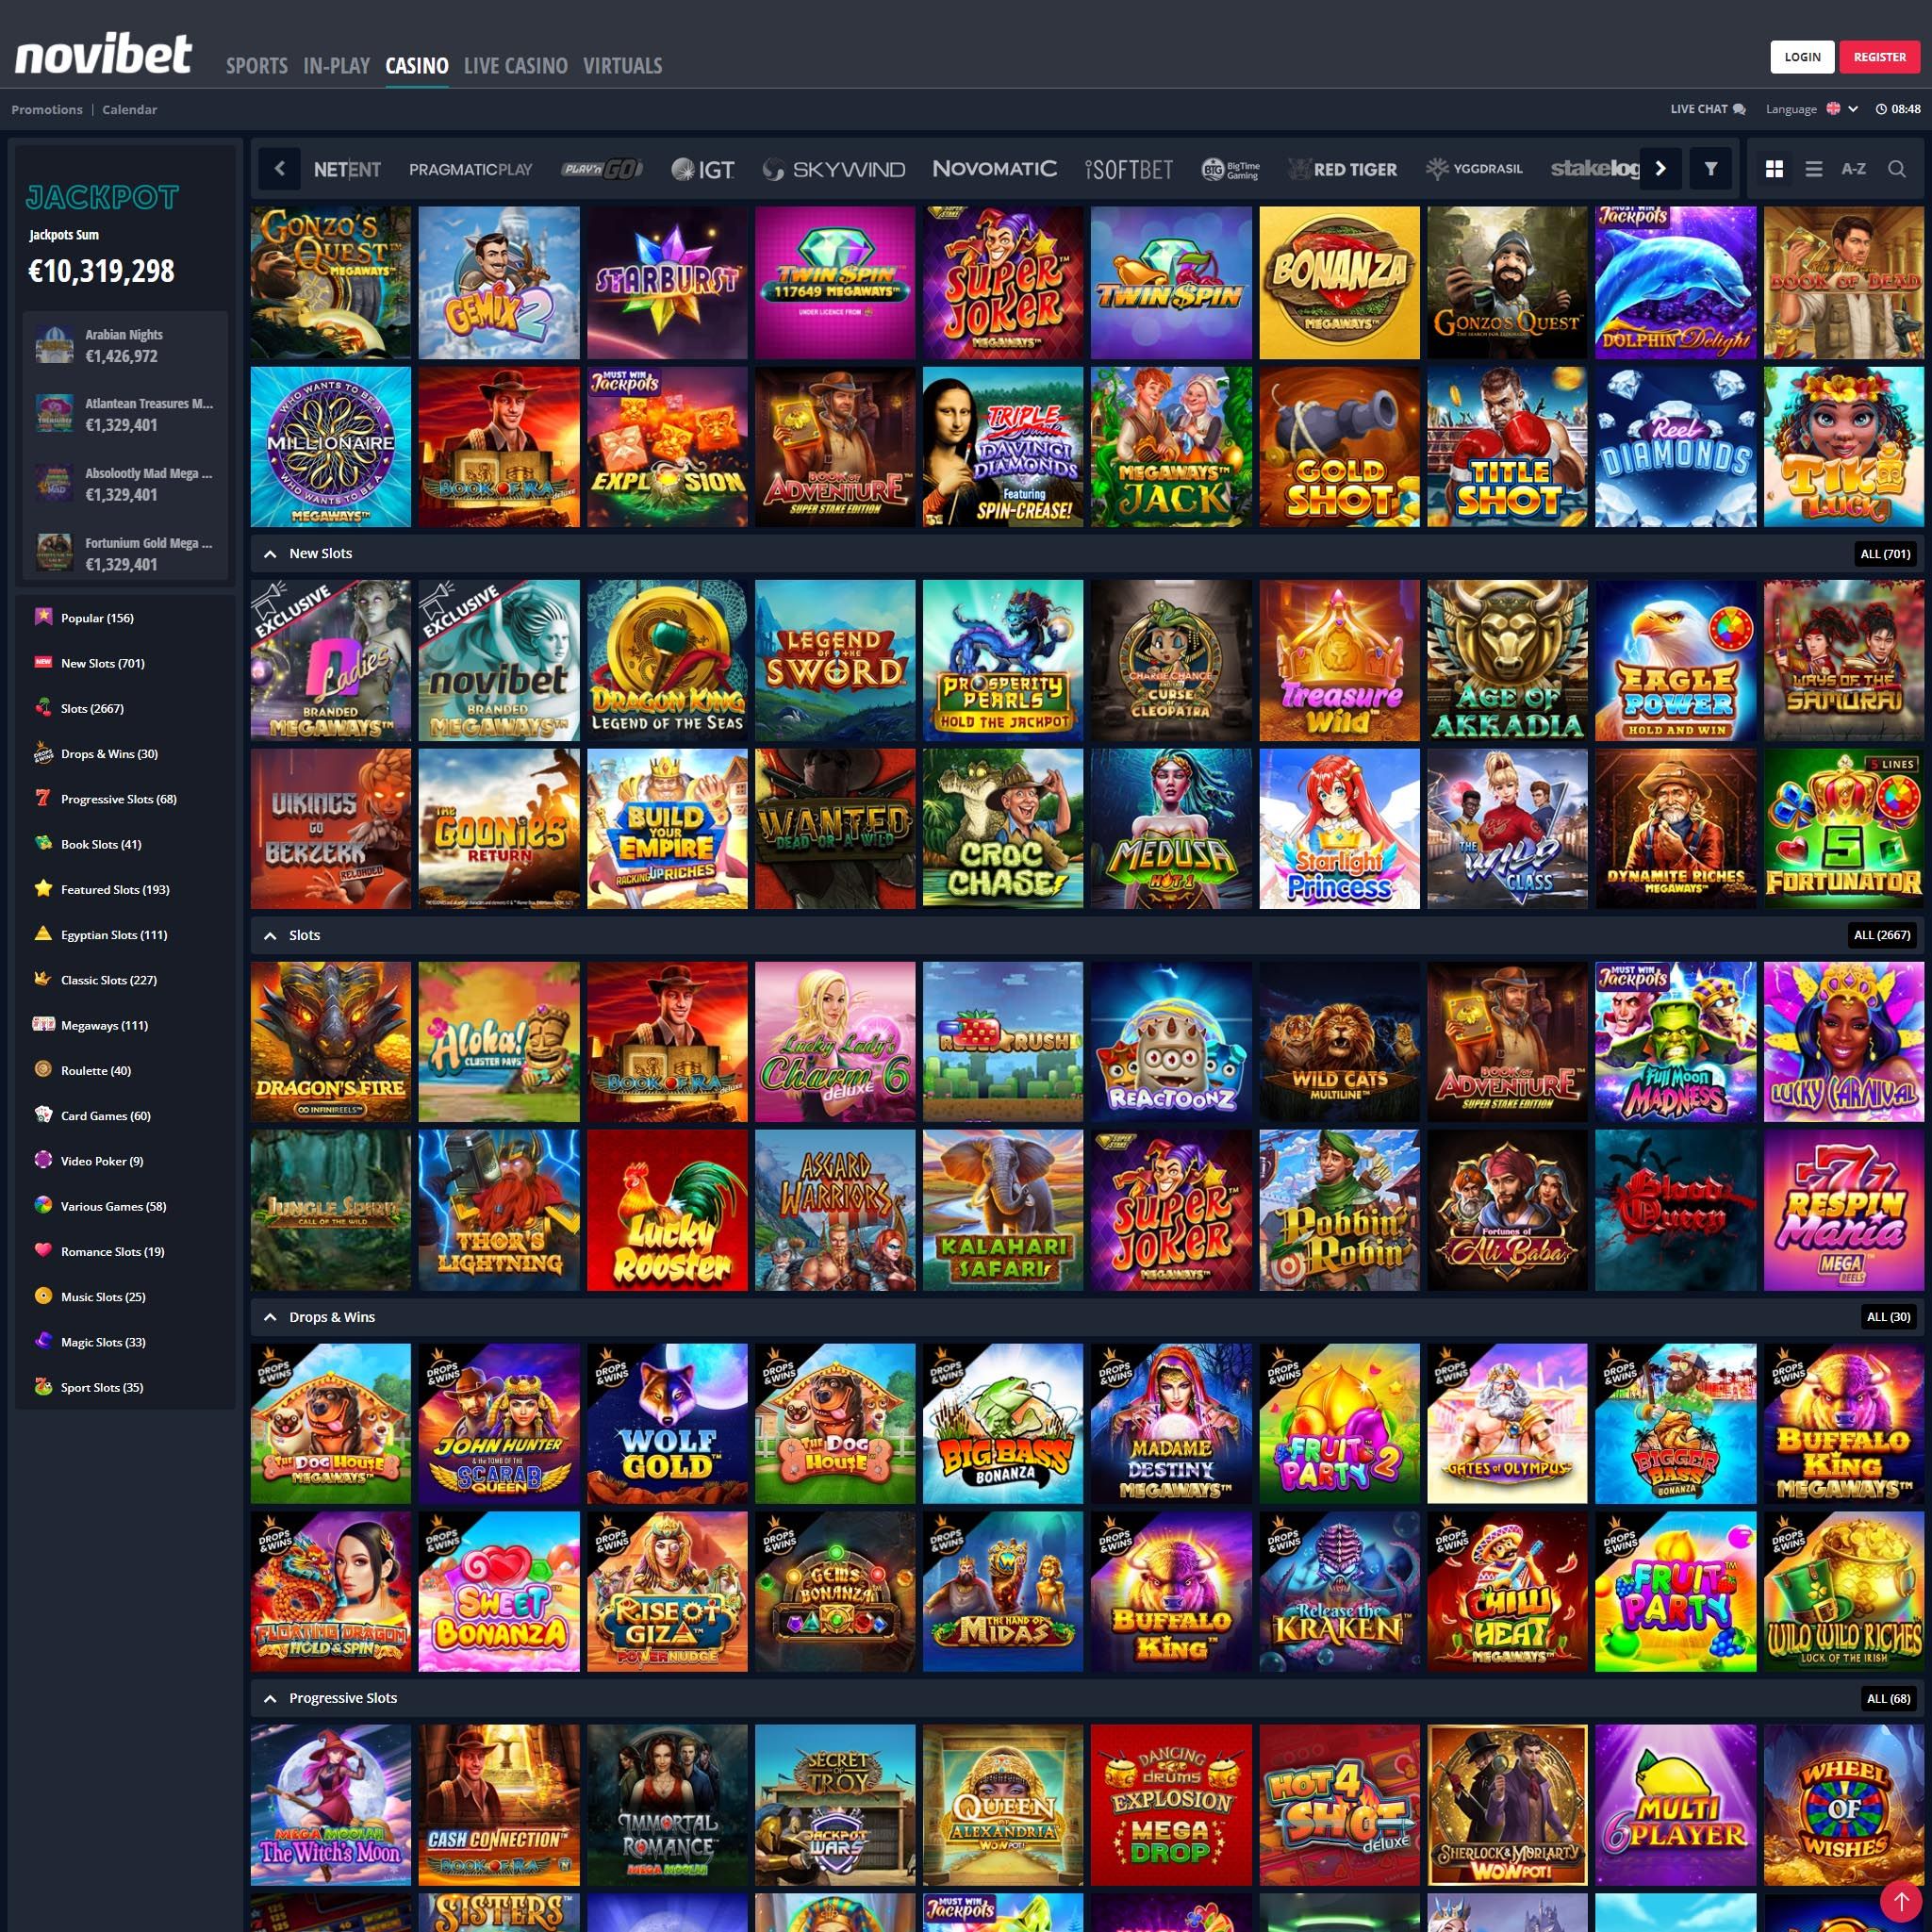 Novibet full games catalogue